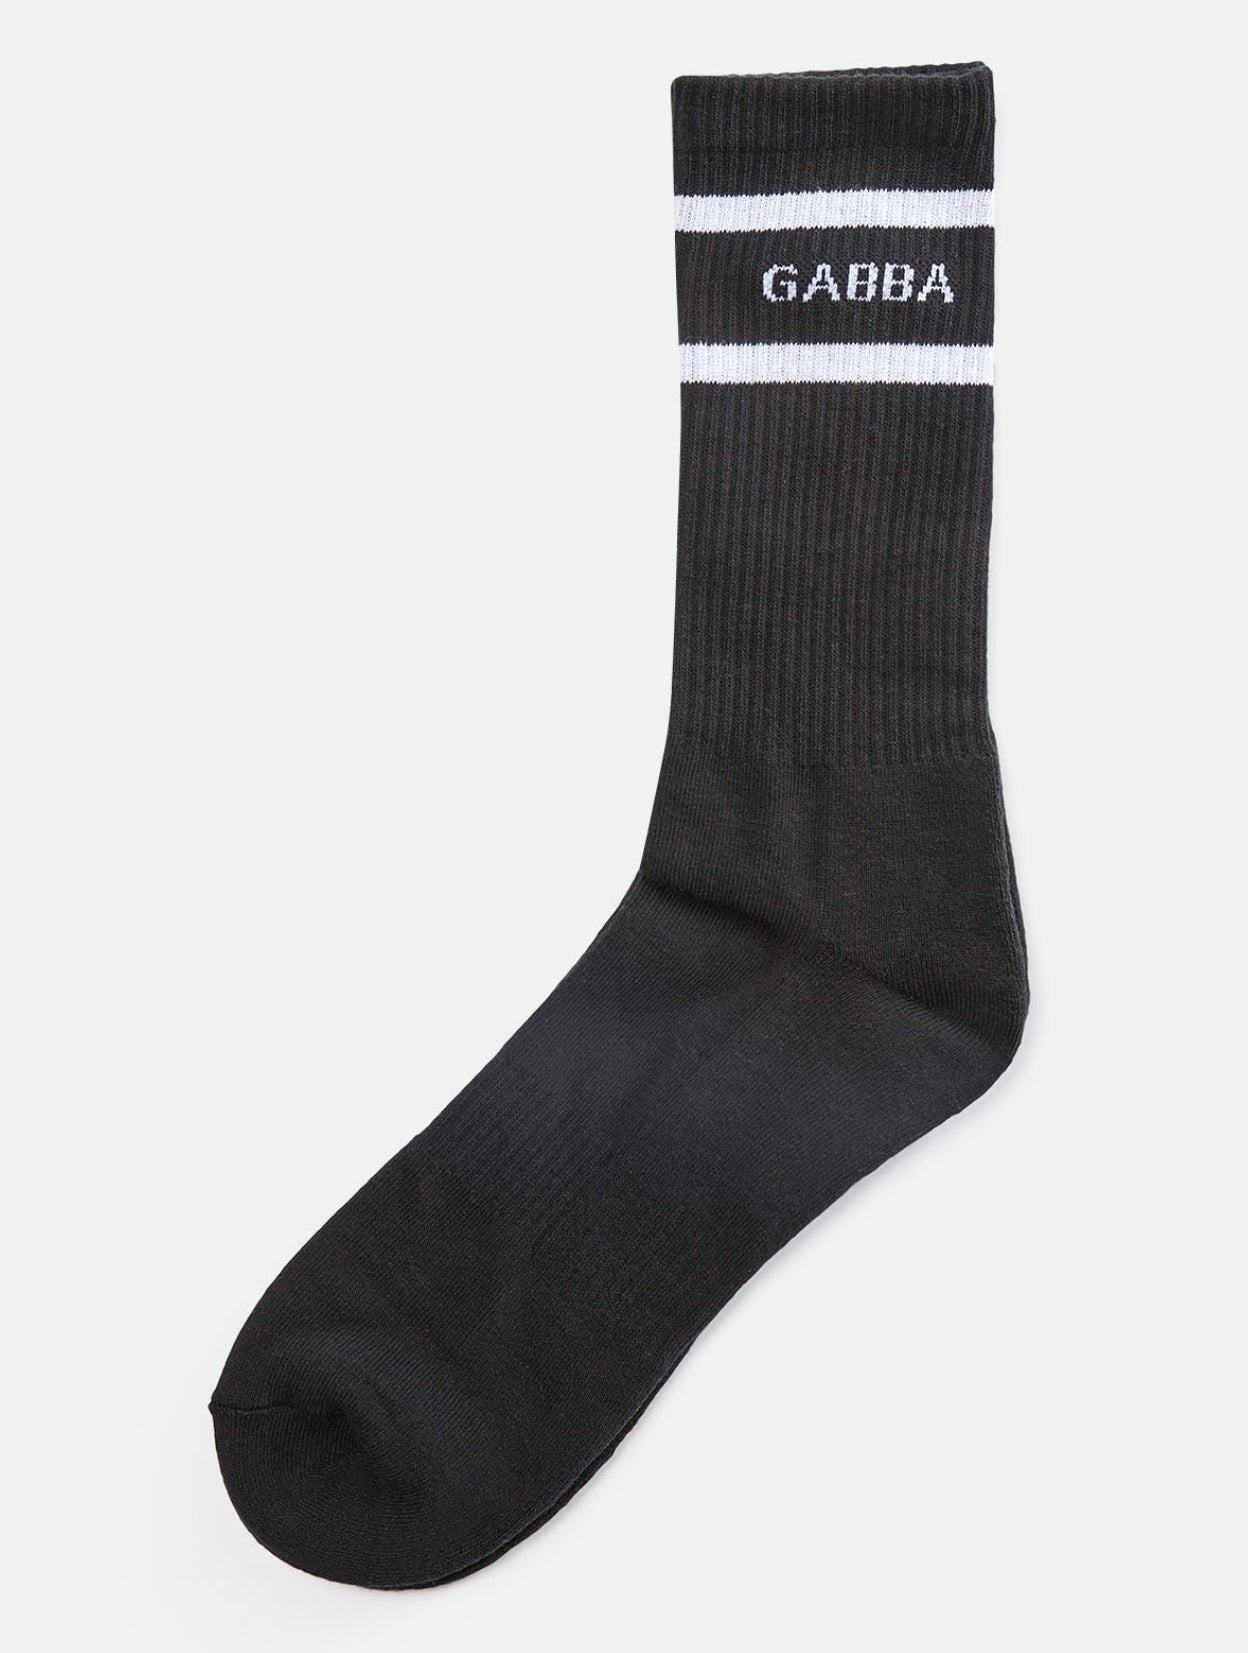 GABBA Loris Socks - Black